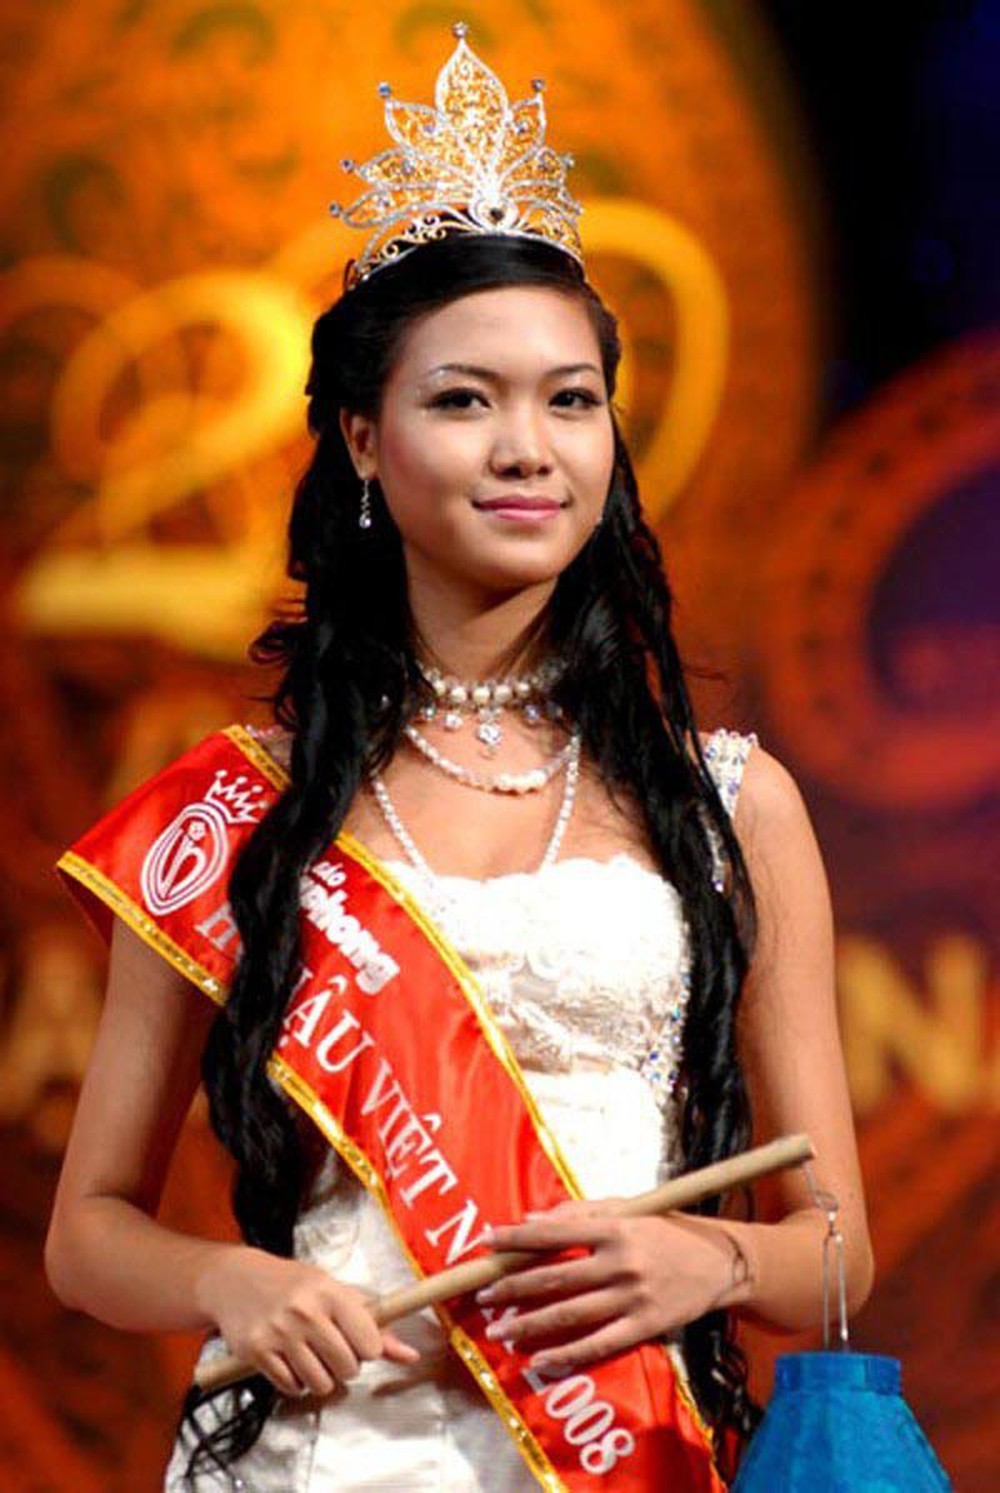 Sau 13 năm làm rơi vương miện, Hoa hậu Thùy Dung sống lặng lẽ tại Mỹ - Ảnh 1